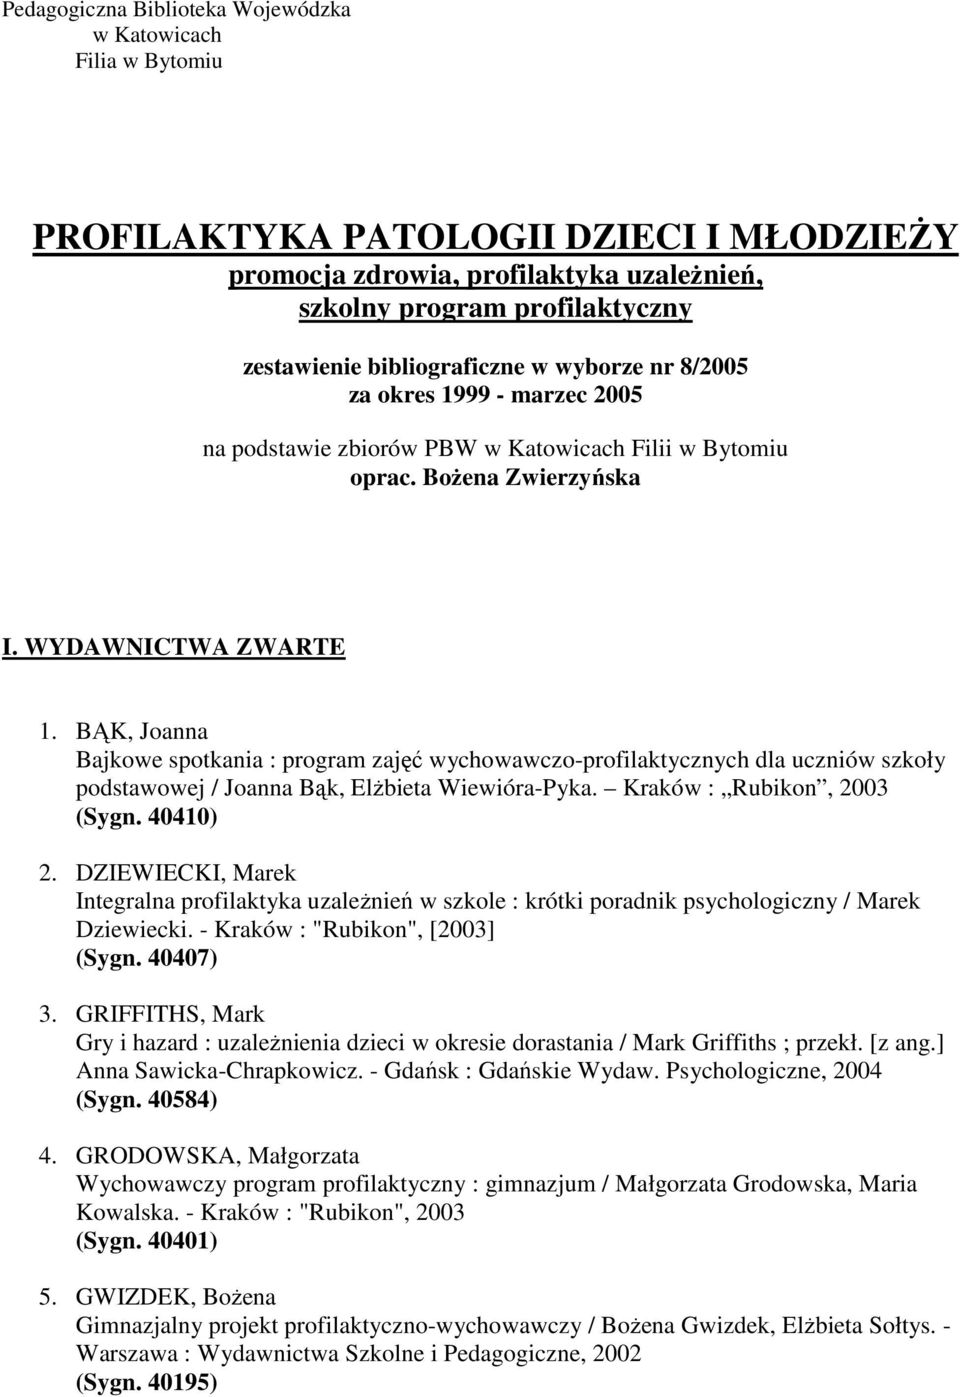 BĄK, Joanna Bajkowe spotkania : program zajęć wychowawczo-profilaktycznych dla uczniów szkoły podstawowej / Joanna Bąk, Elżbieta Wiewióra-Pyka. Kraków : Rubikon, 2003 (Sygn. 40410) 2.